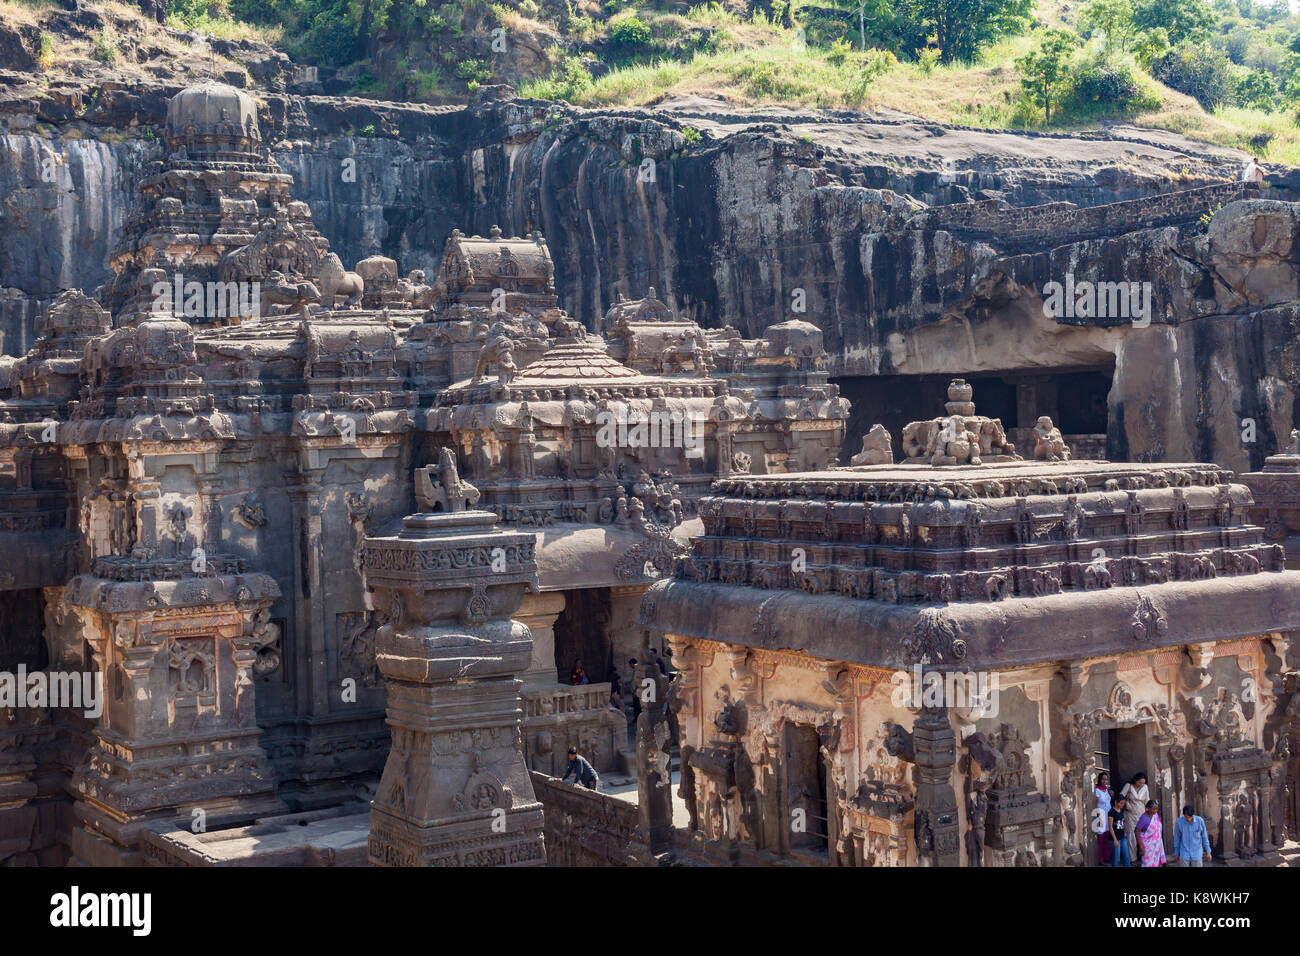 Le Temple Kailasa ou Kailasanatha, Ellora, Maharashtra, Inde, est un rock-cut temple-monastère des complexes de grottes. Banque D'Images